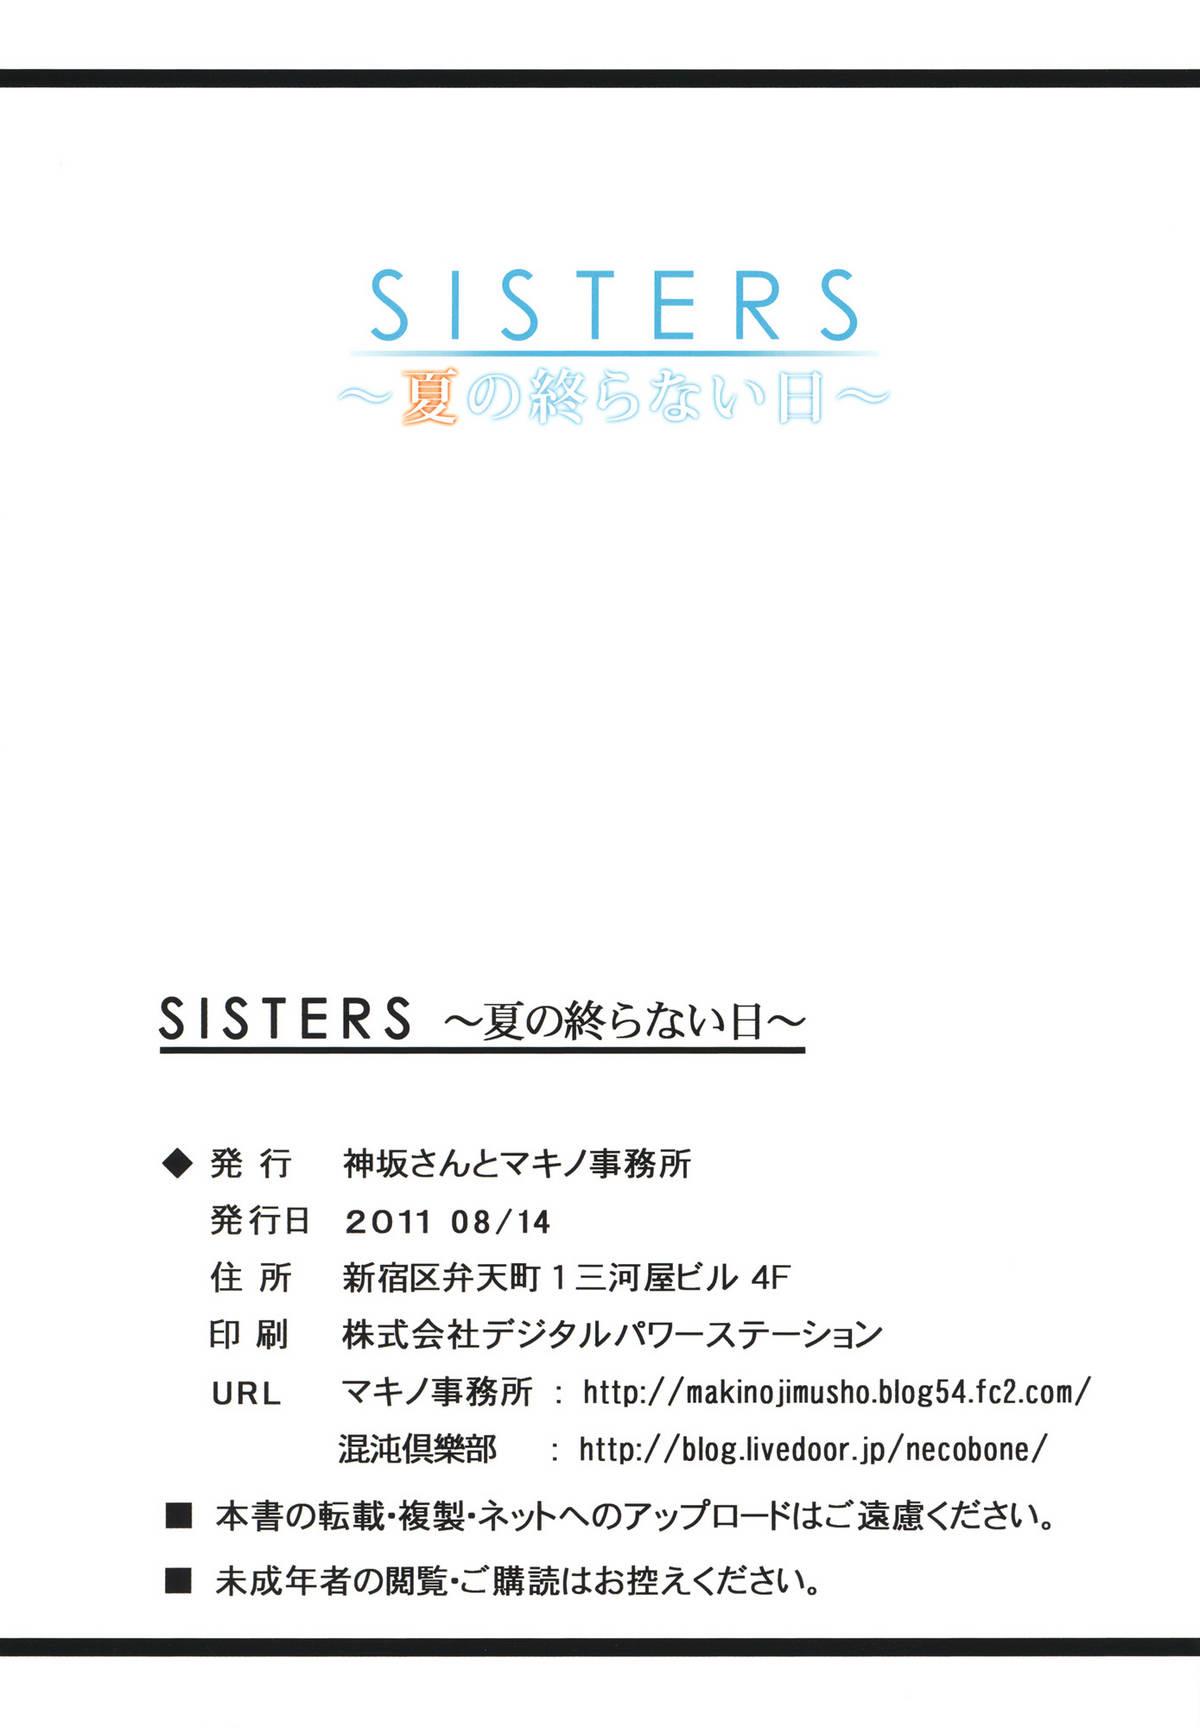 Spanking SISTERS - Kakusareta Kioku, Natsu no Owaranai Hi - Sisters natsu no saigo no hi Transvestite - Page 34